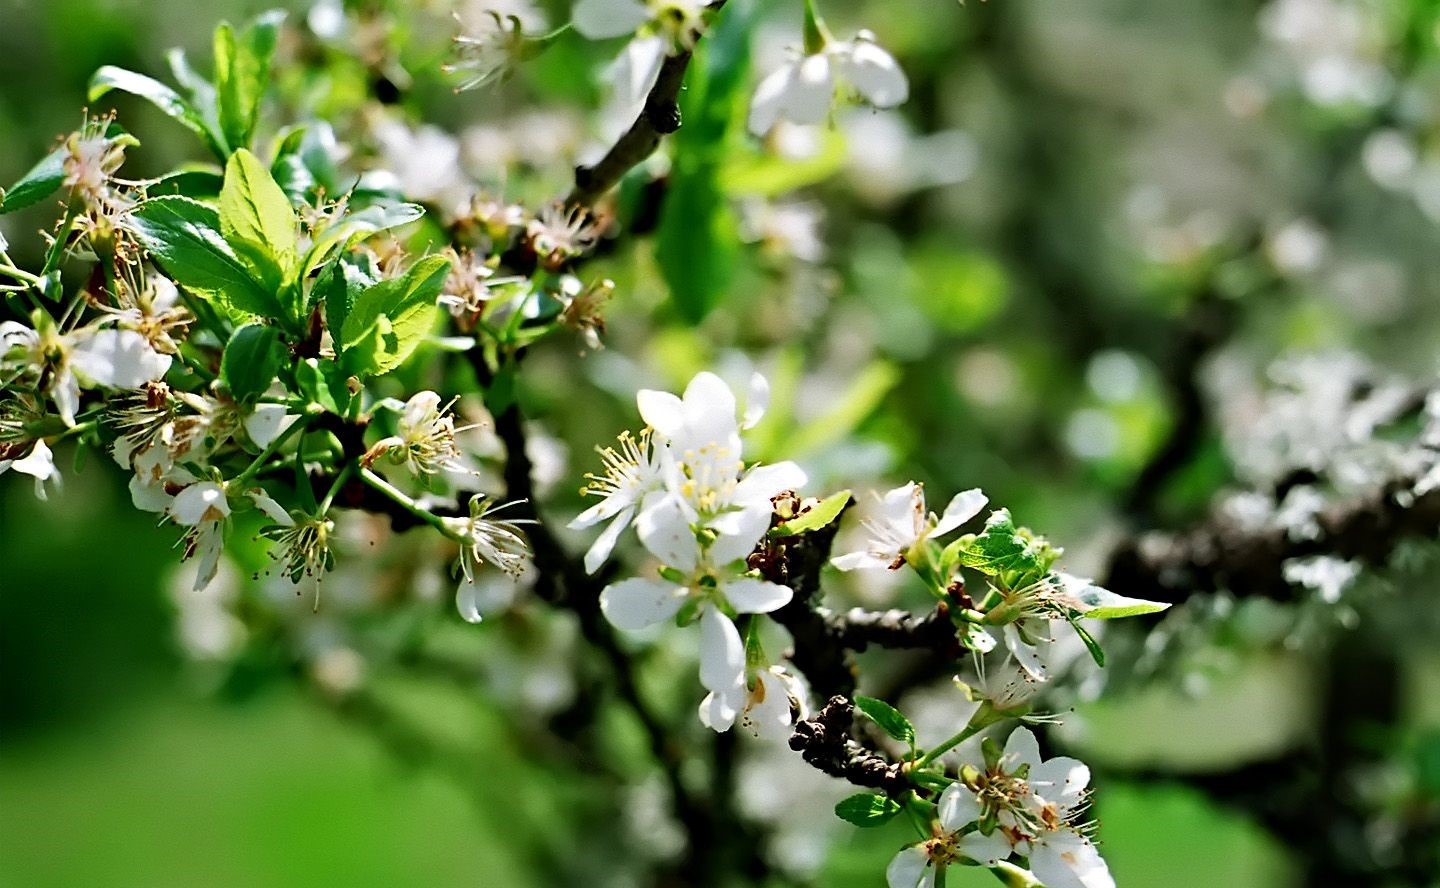 تصویری زیبا برای استوری از طبیعت بهاری و شکوفه های نهال سیب